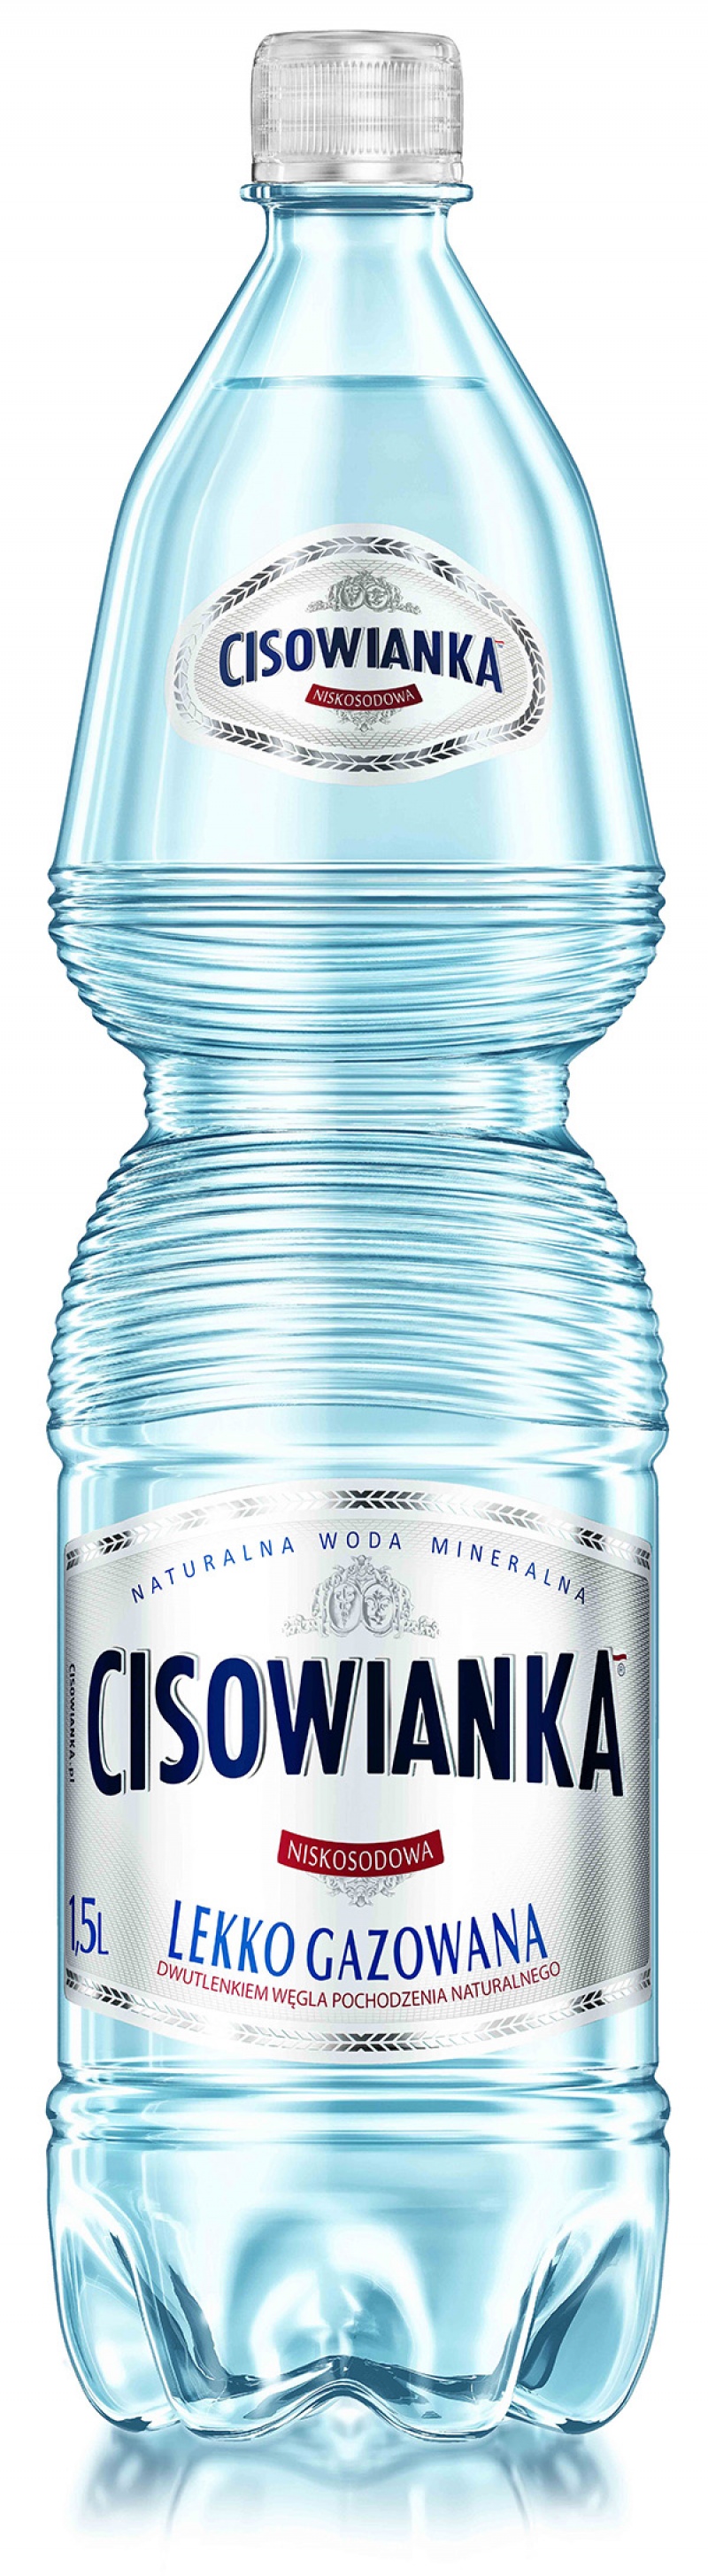 Woda CISOWIANKA, lekko gazowana, butelka plastikowa 1,5l - zdjęcie (2